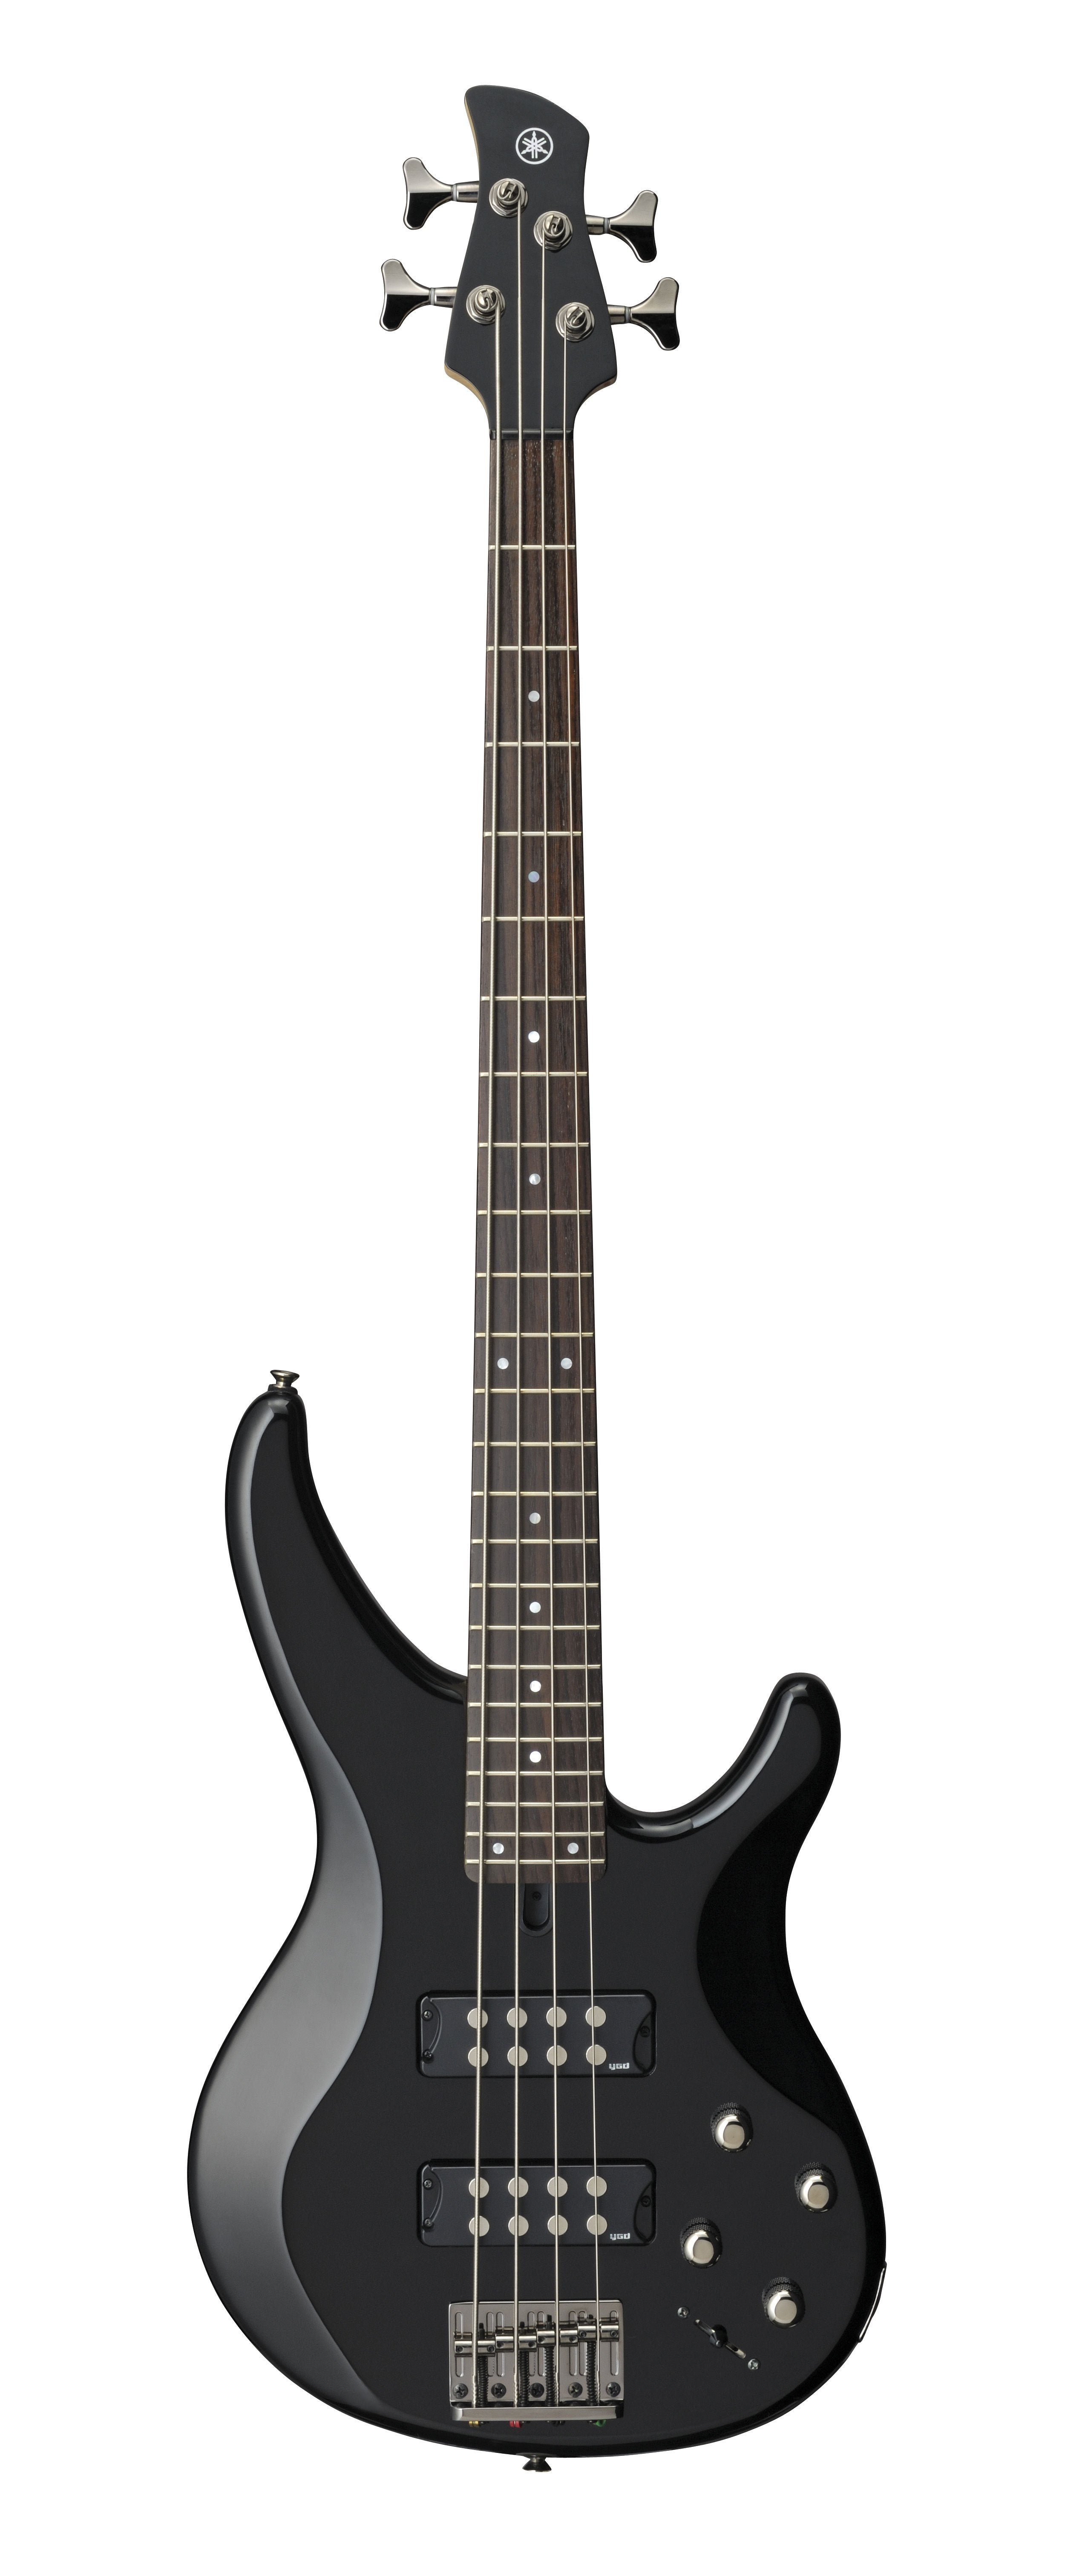 YAMAHA TRBX304 Electric Bass Guitar (Black)